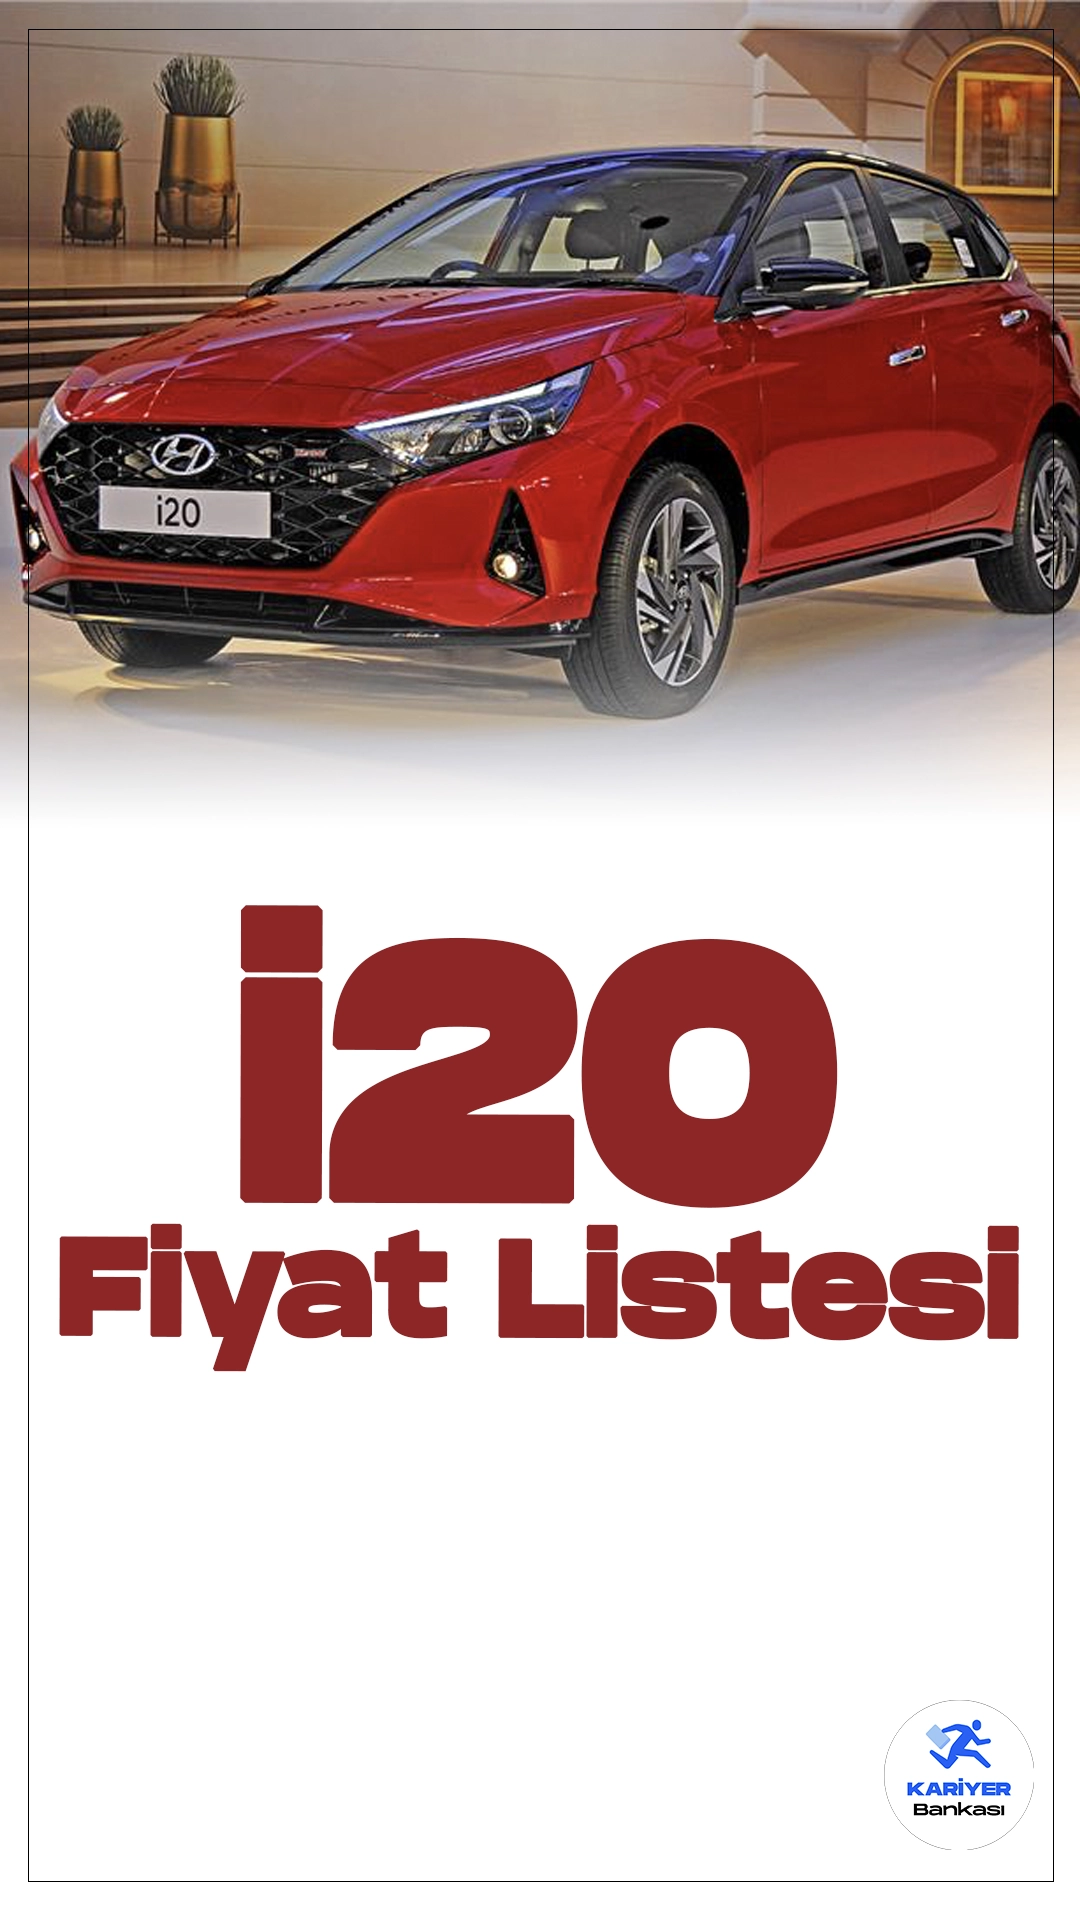 Hyundai i20 Mayıs 2024 Fiyat Listesi Yayımlandı.Hyundai i20, Hyundai'nin küçük sınıf araç segmentinde yer alan başarılı modellerinden biri olarak öne çıkıyor. Son yıllarda bu segmentte rekabet giderek artarken, i20 modeli hem tasarımı hem de teknolojik özellikleri ile dikkat çekiyor.